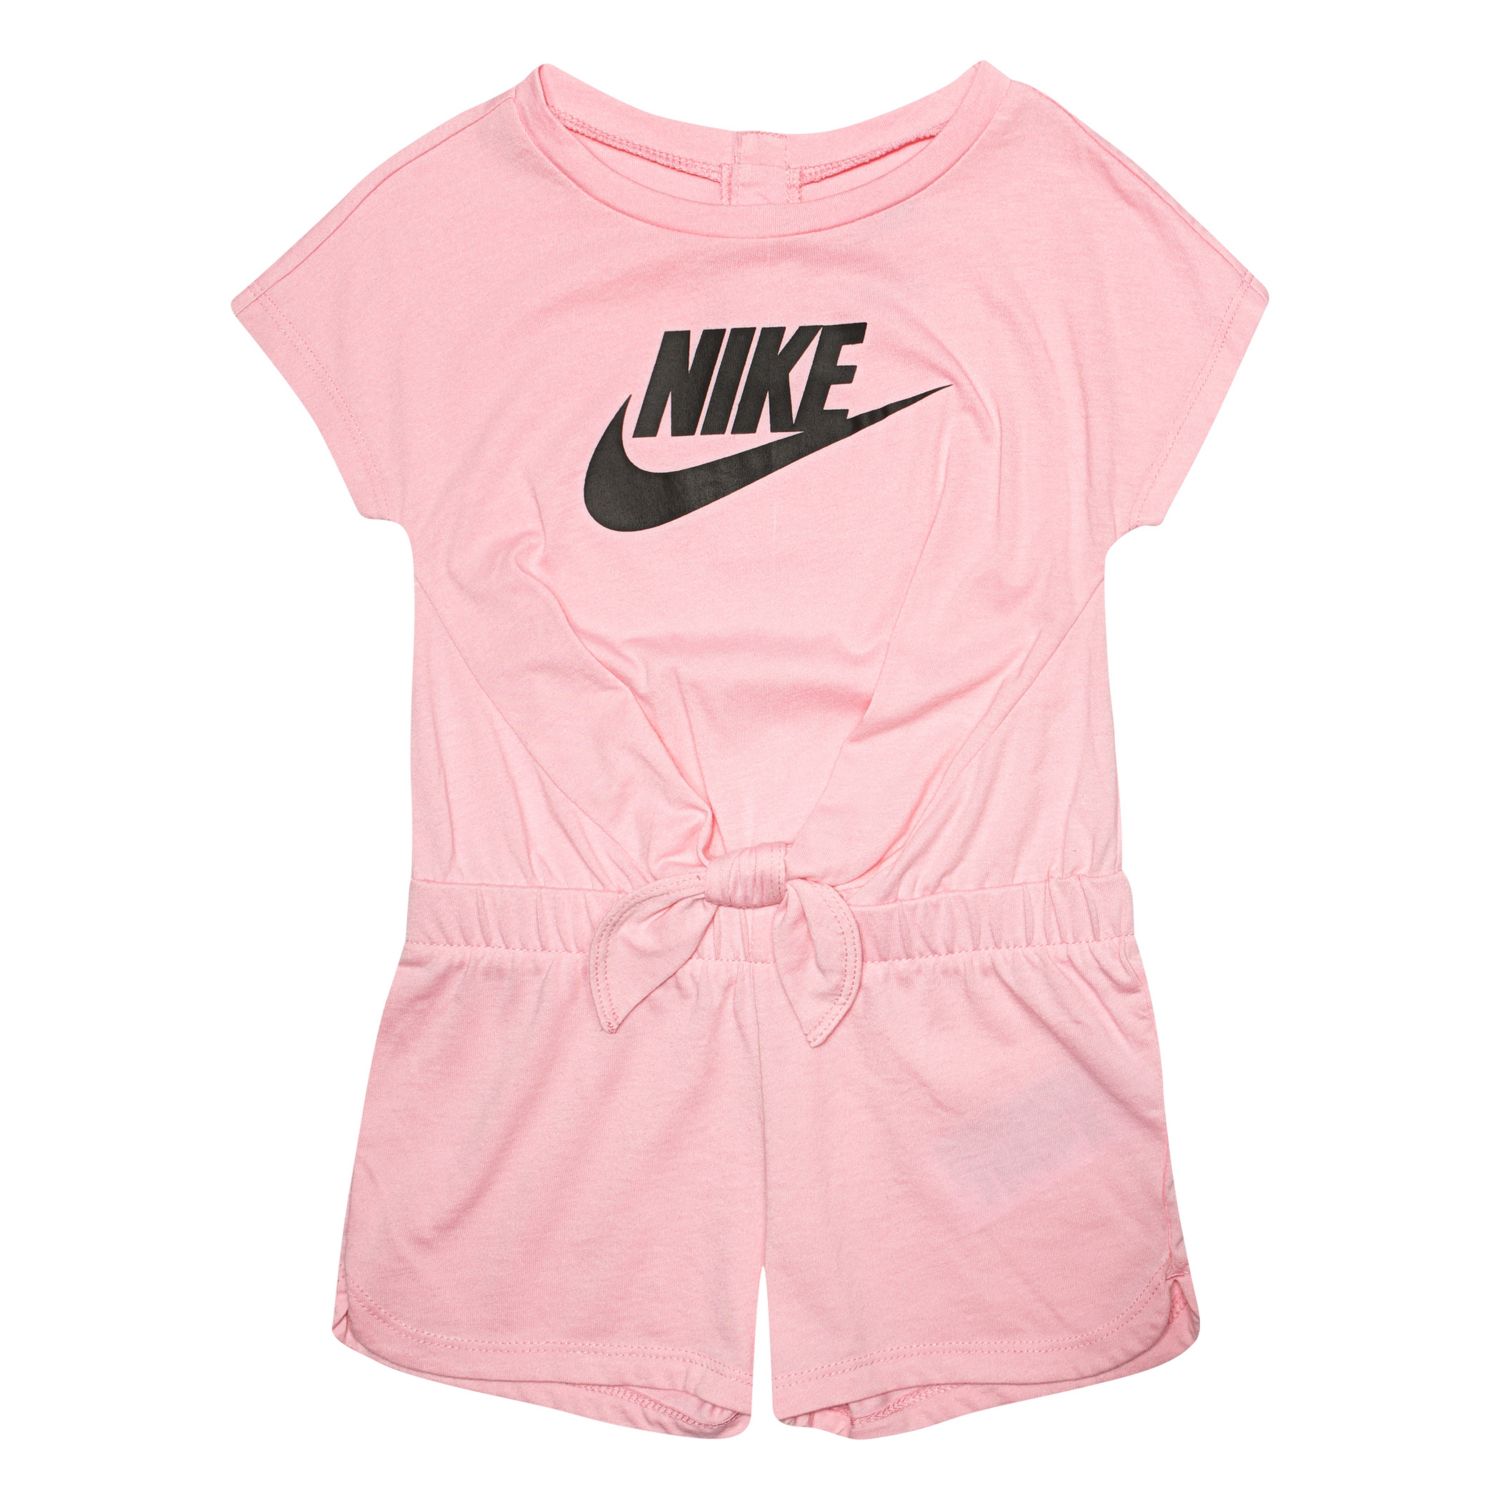 Toddler Girl Nike Romper